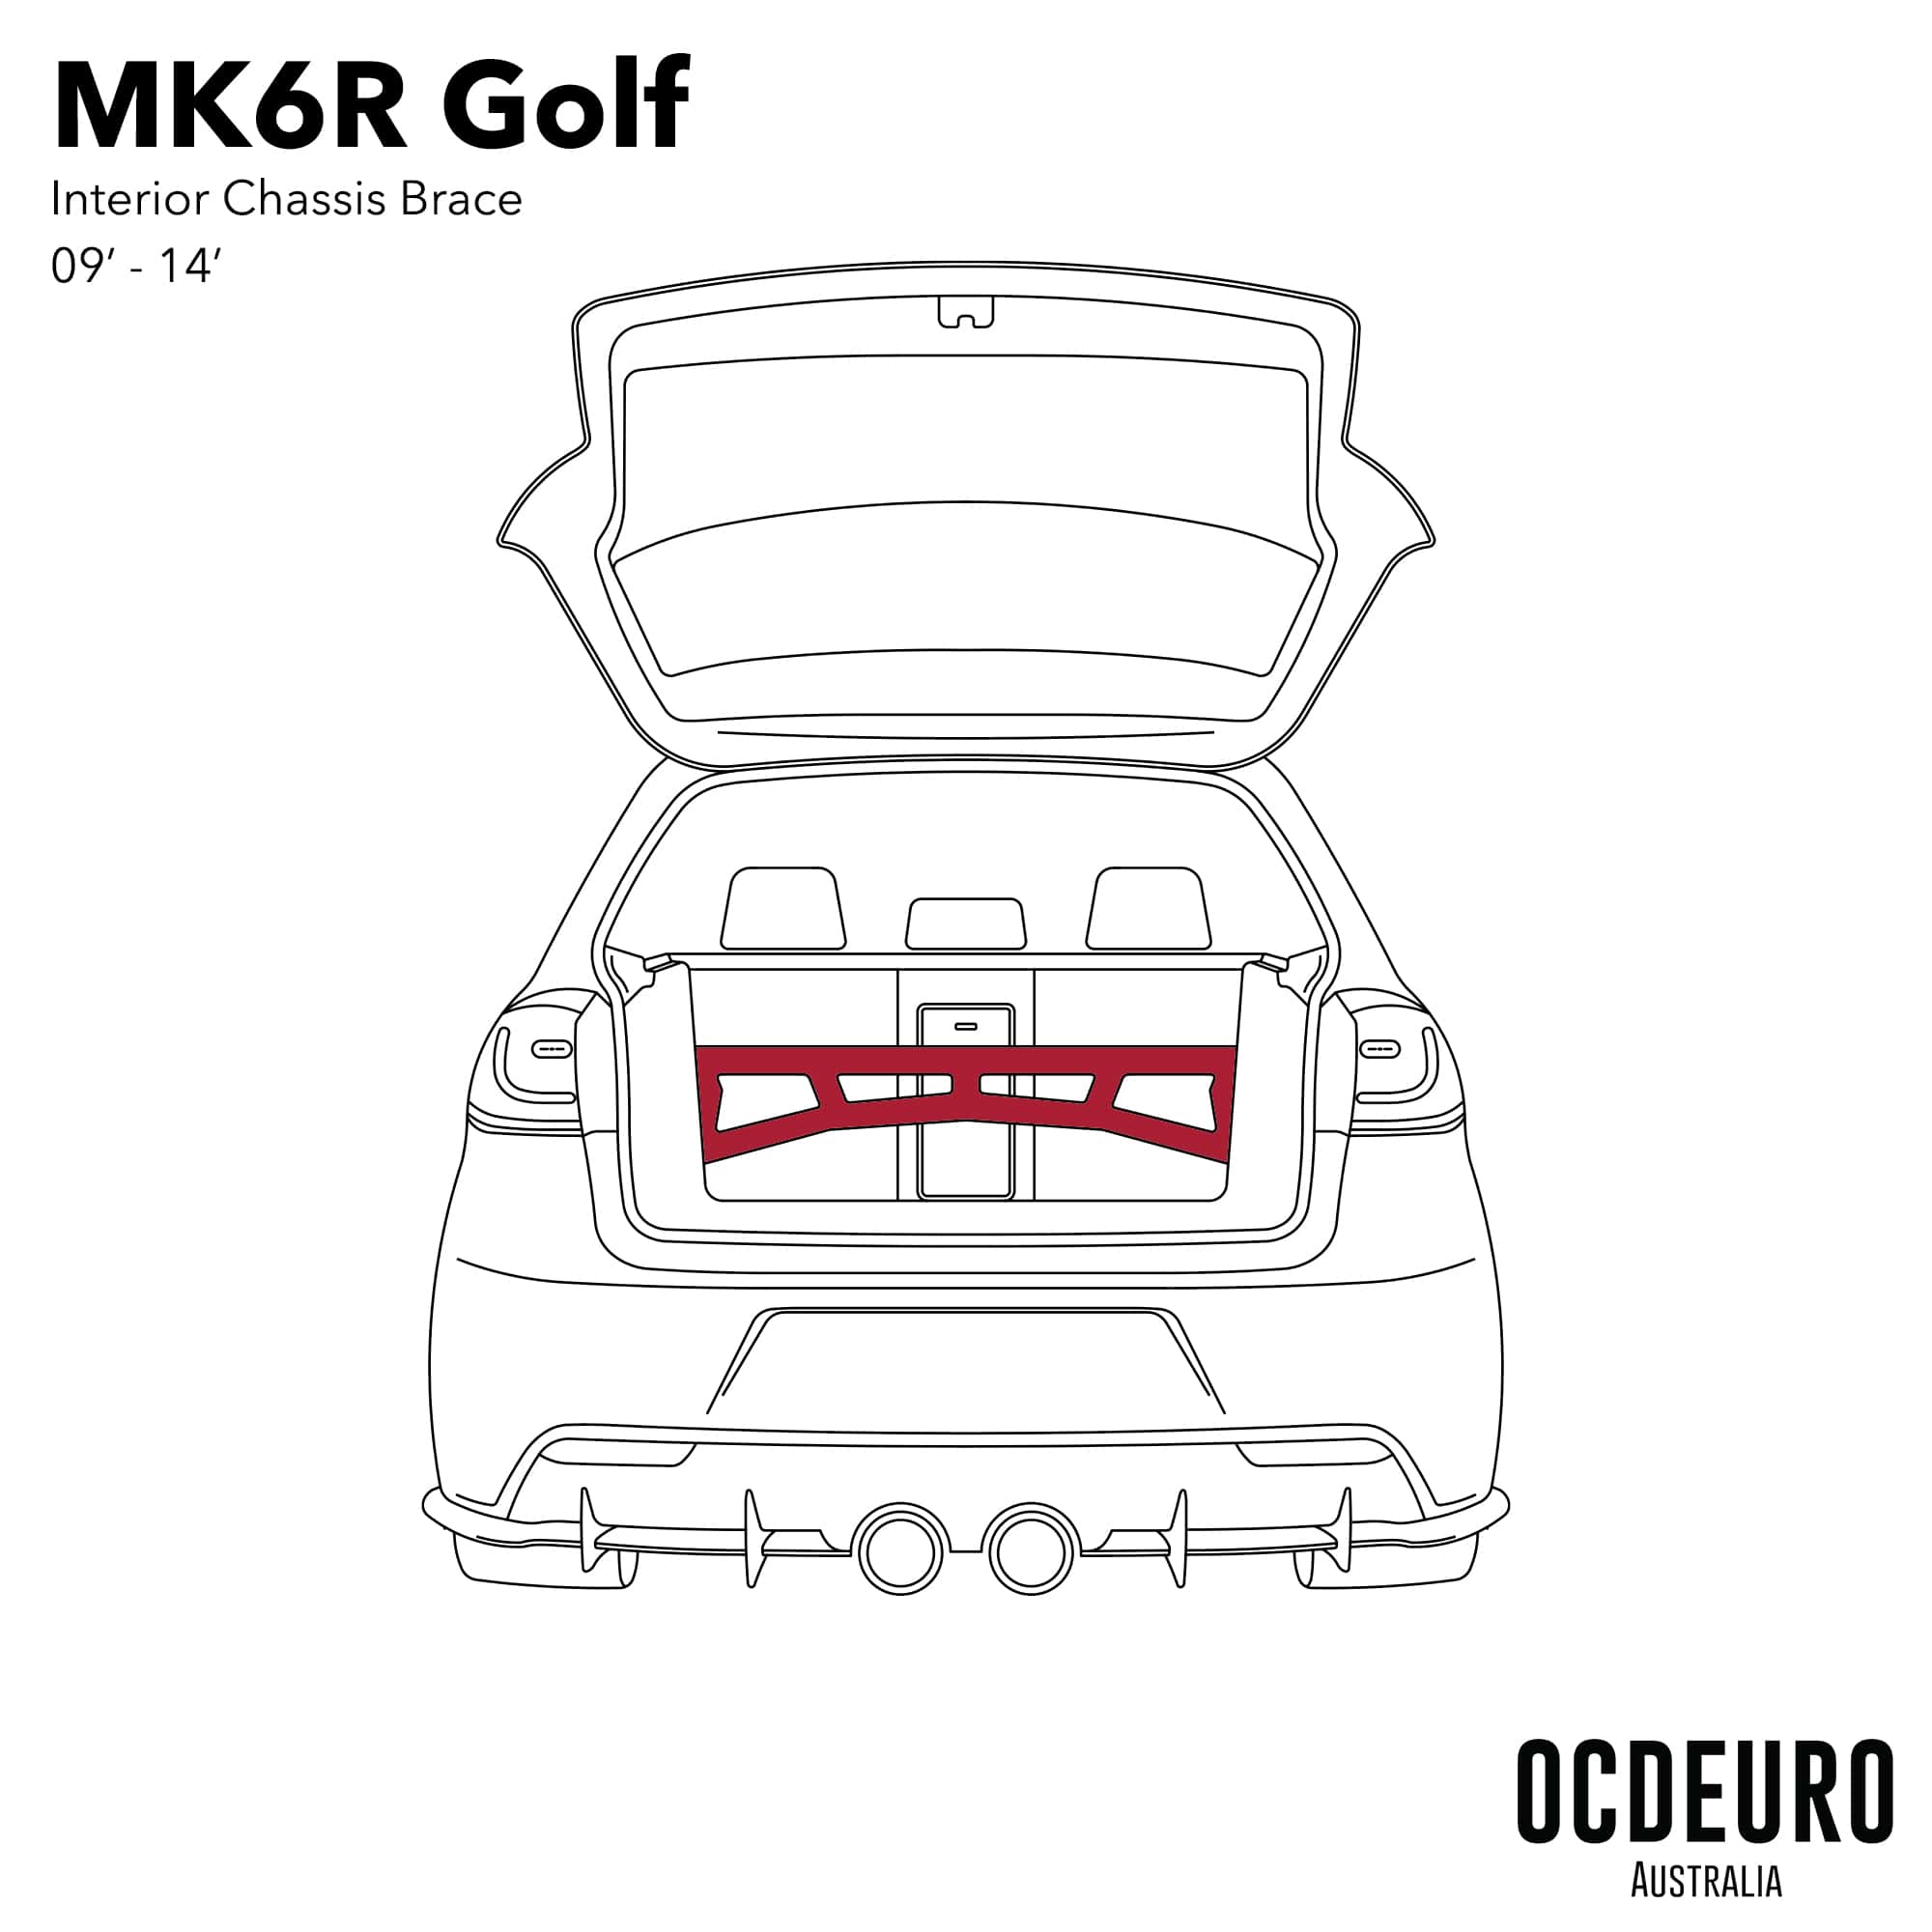 OCDEURO VW Golf MK6 Rear Brace